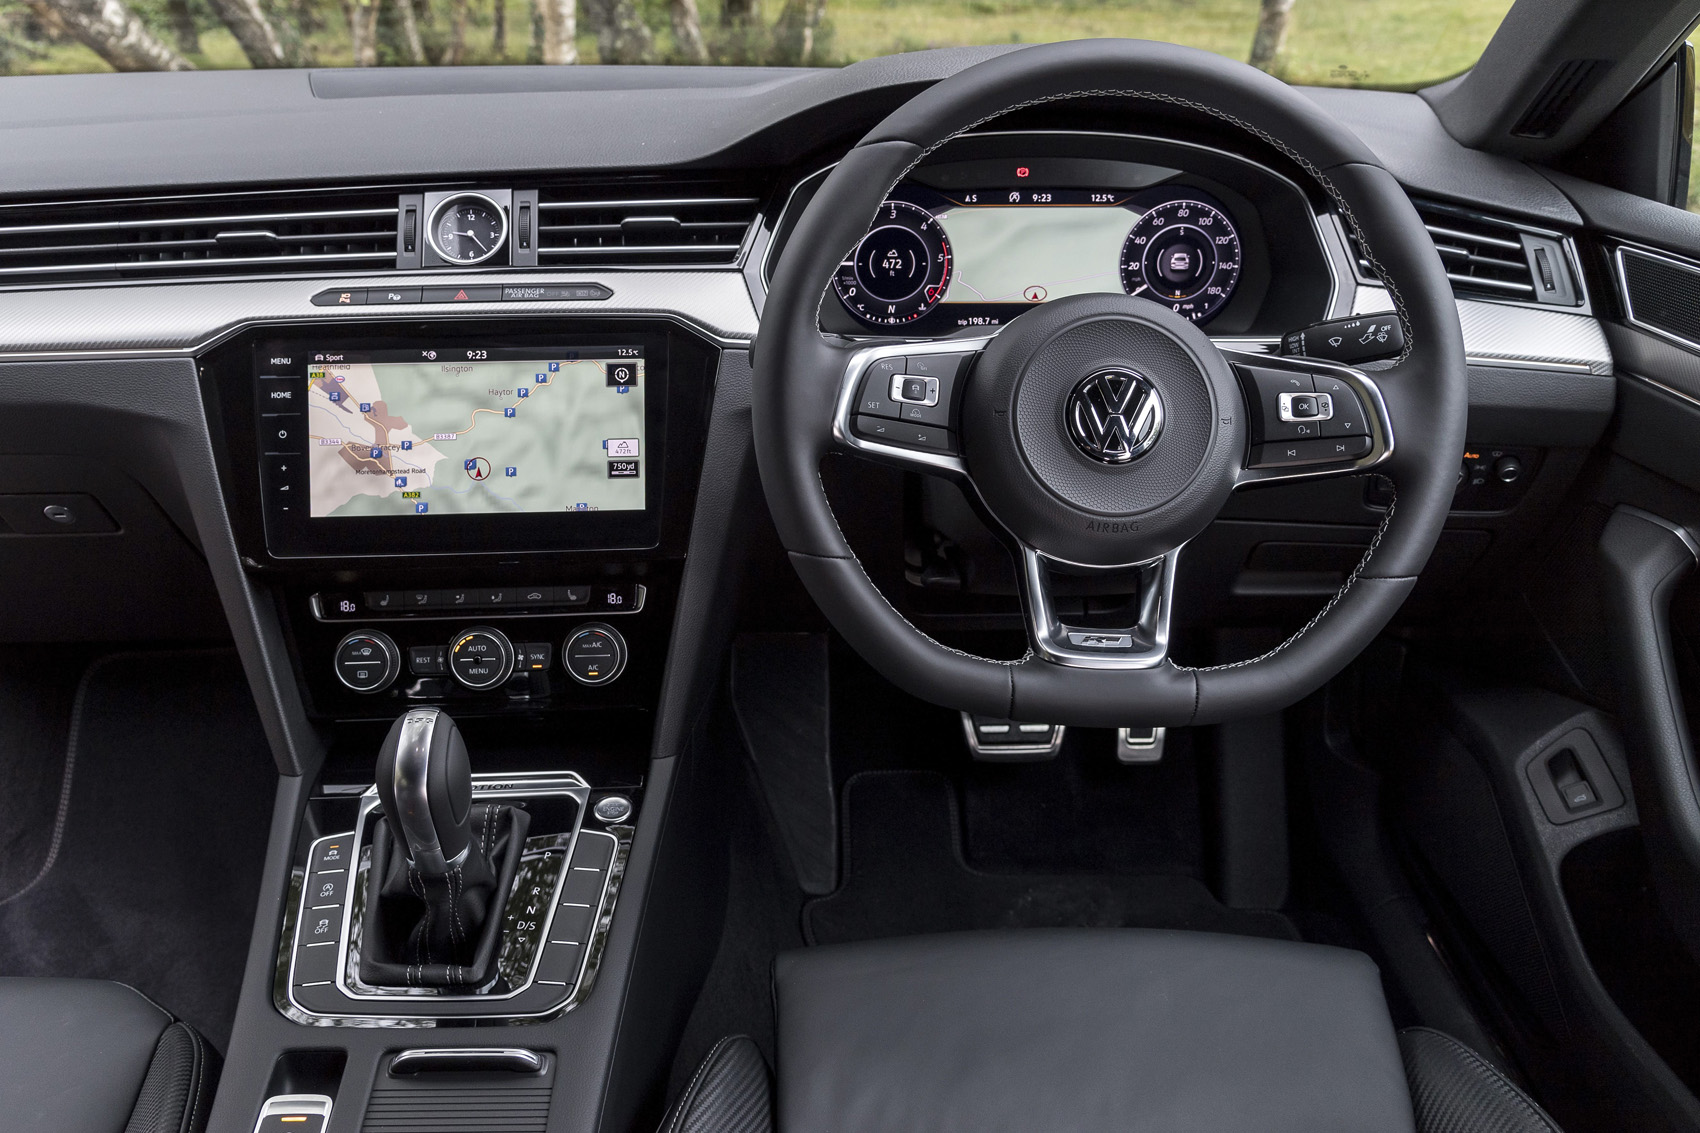 Volkswagen Arteon 2.0 TDI 150PS UK 2017 first drive